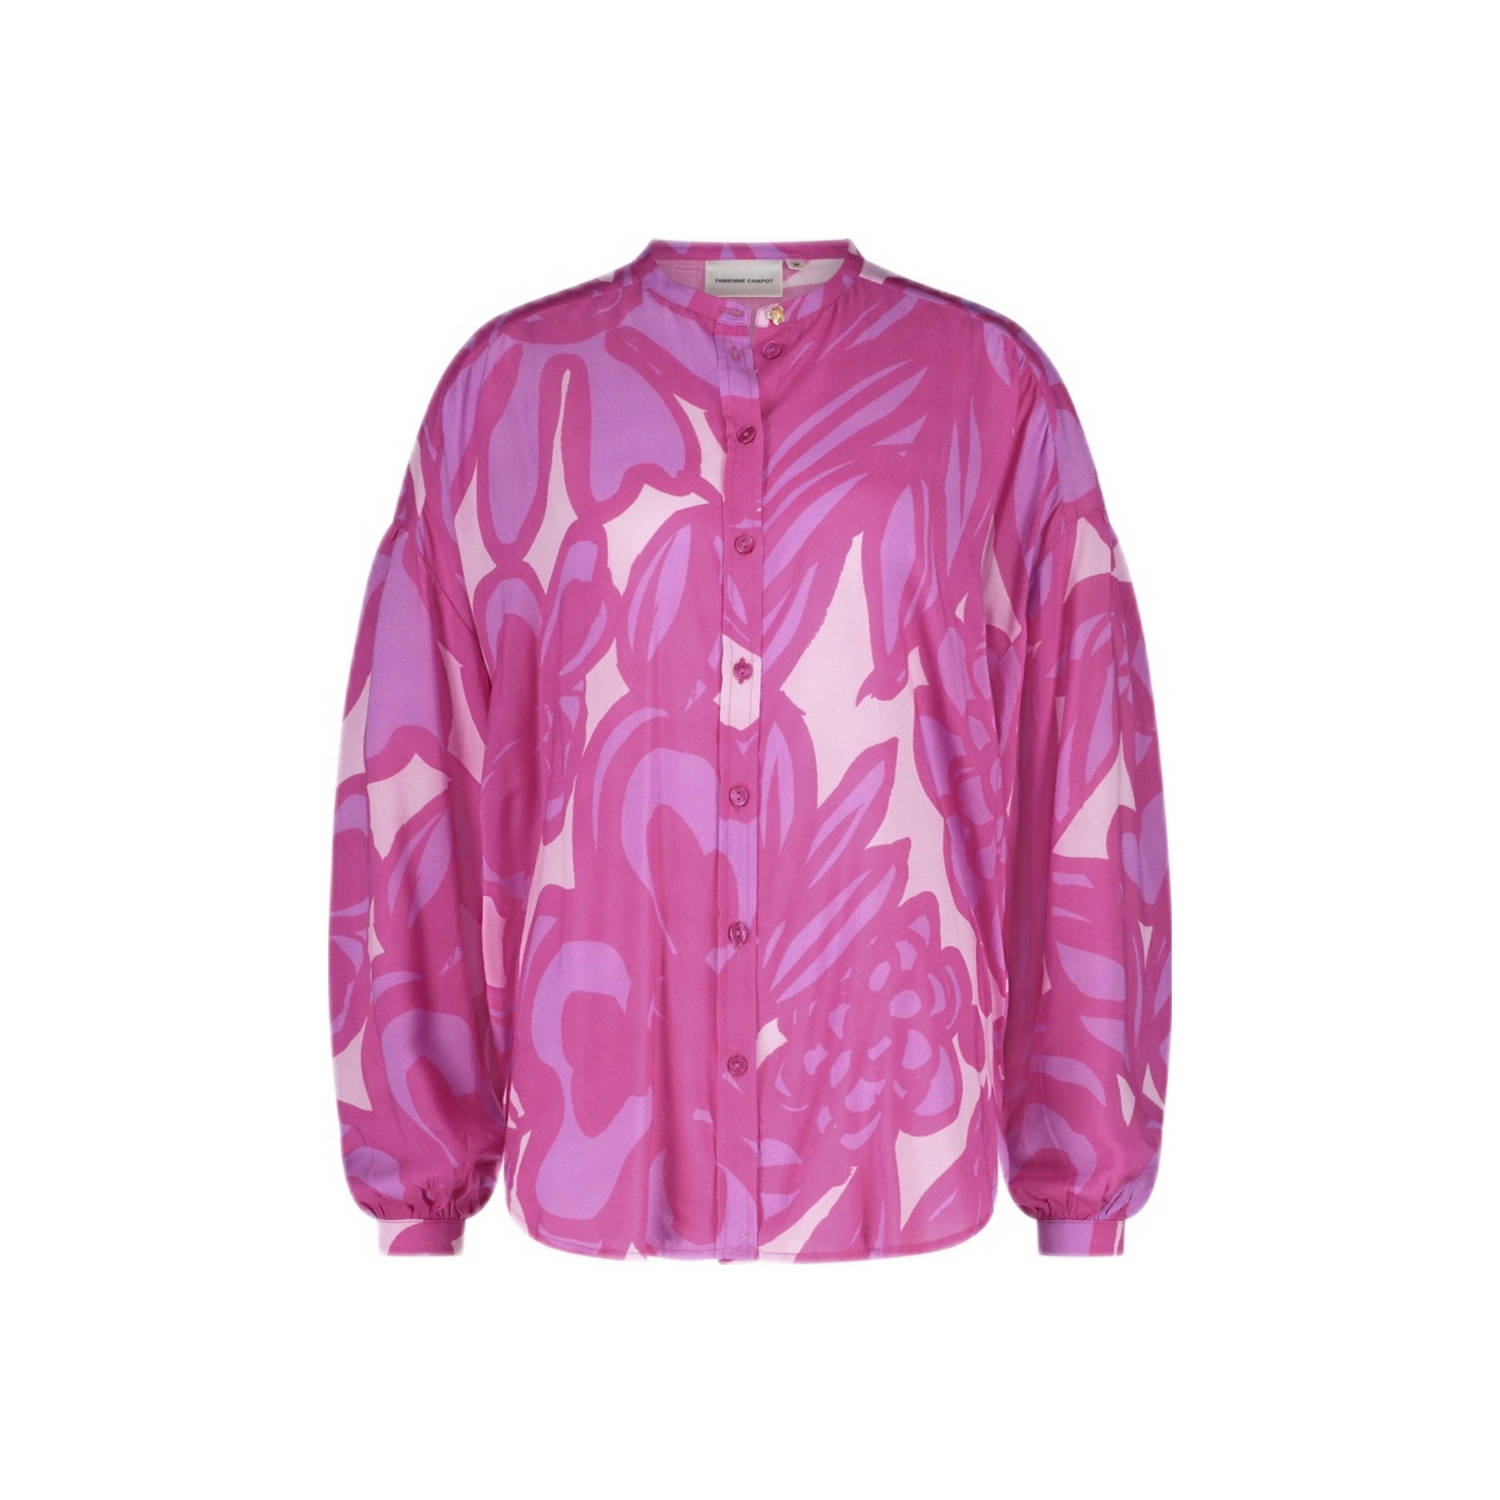 Fabienne Chapot blouse Lexi met all over print roze donkerroze